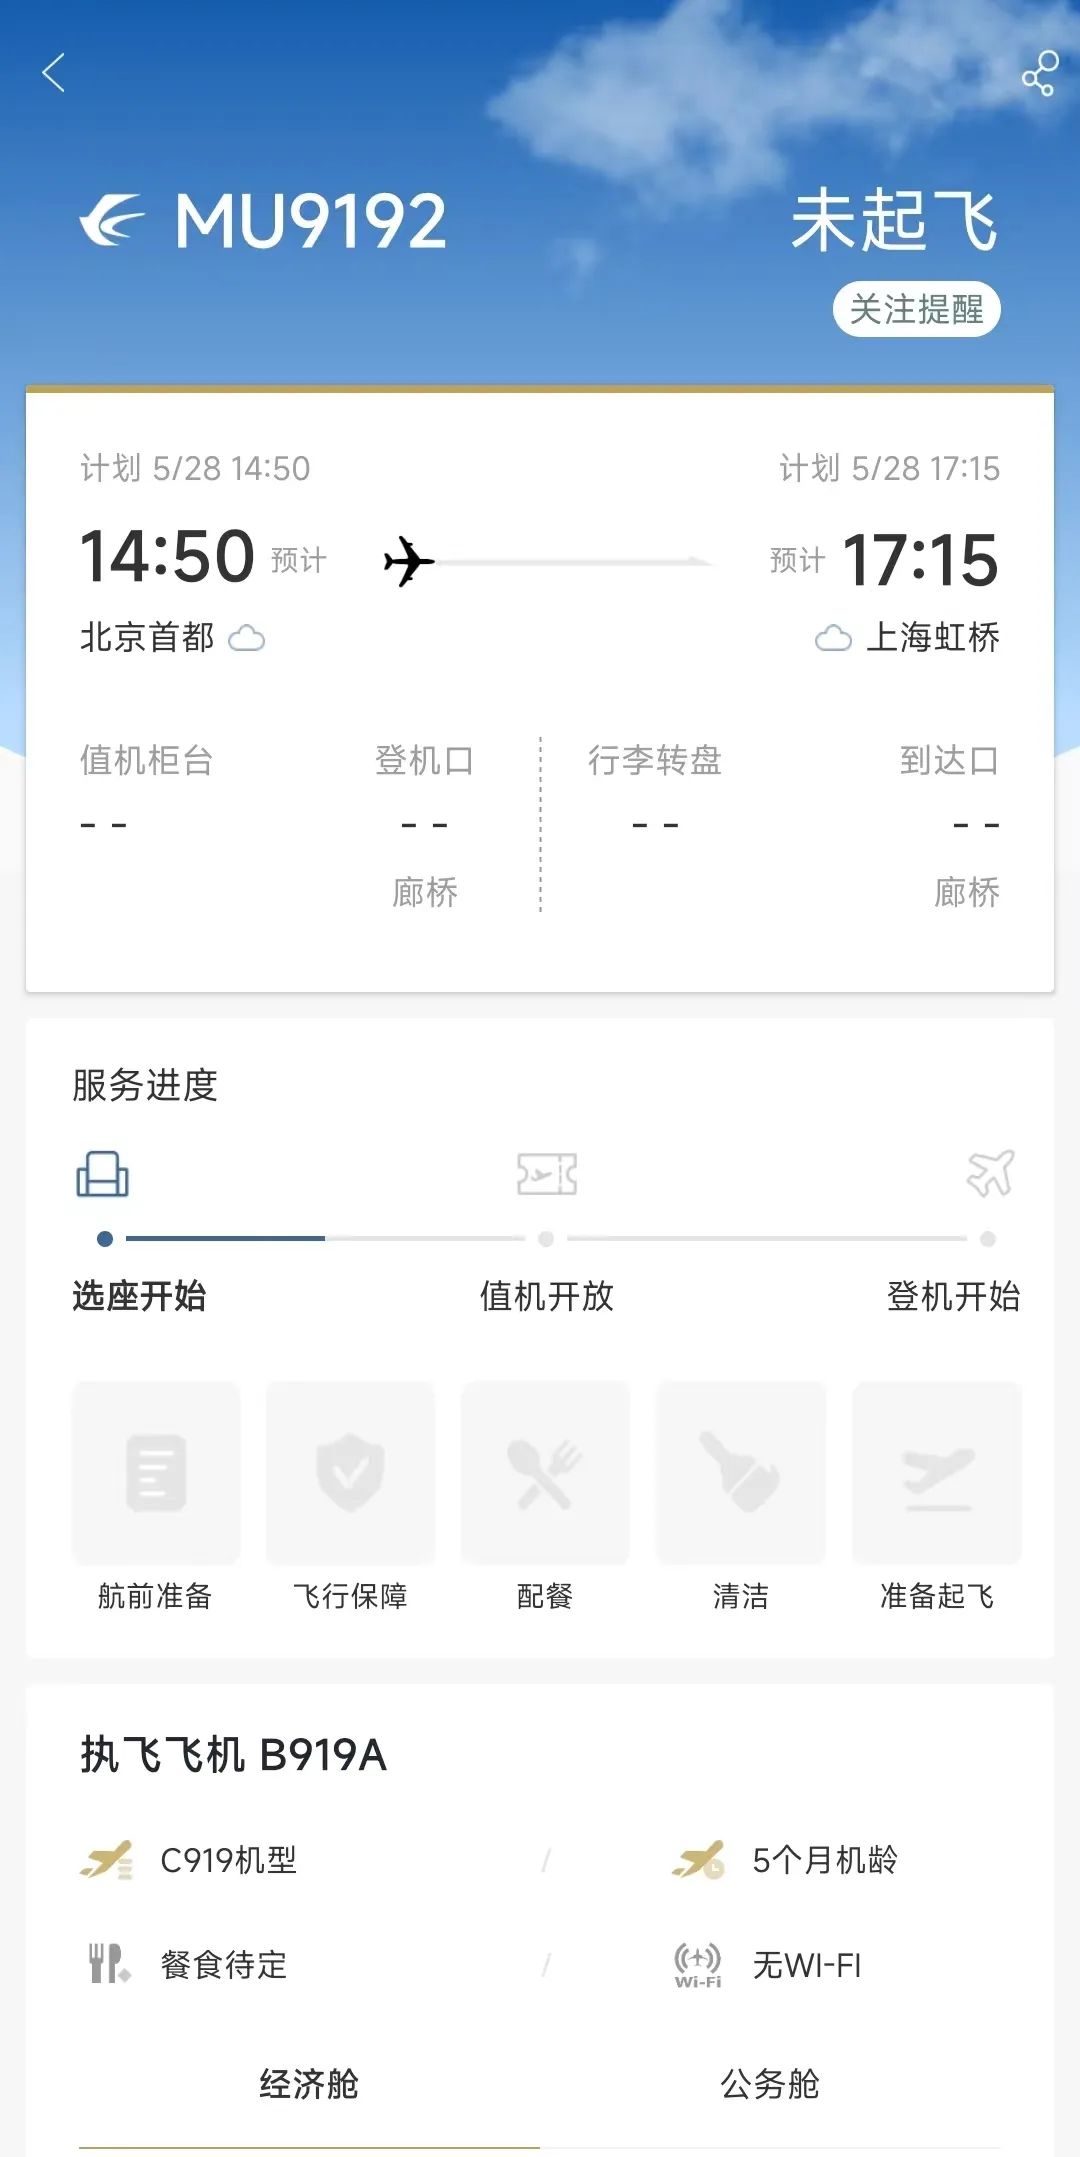 即将首航！上海飞北京！